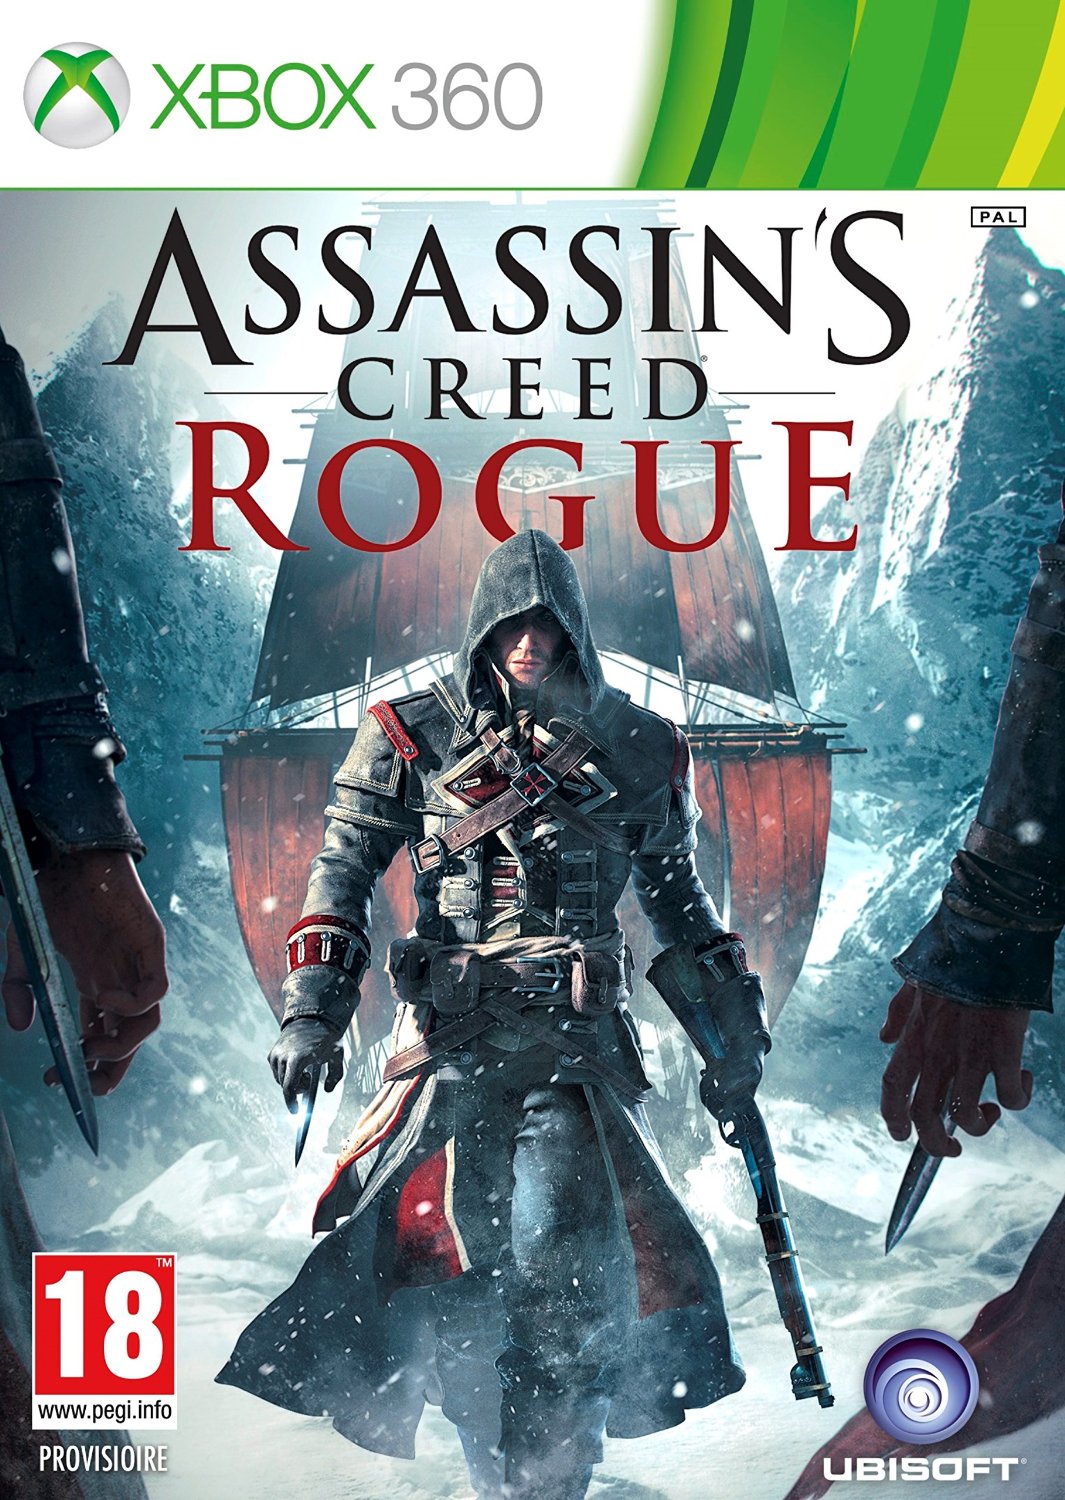 Bote de Assassin's Creed Rogue